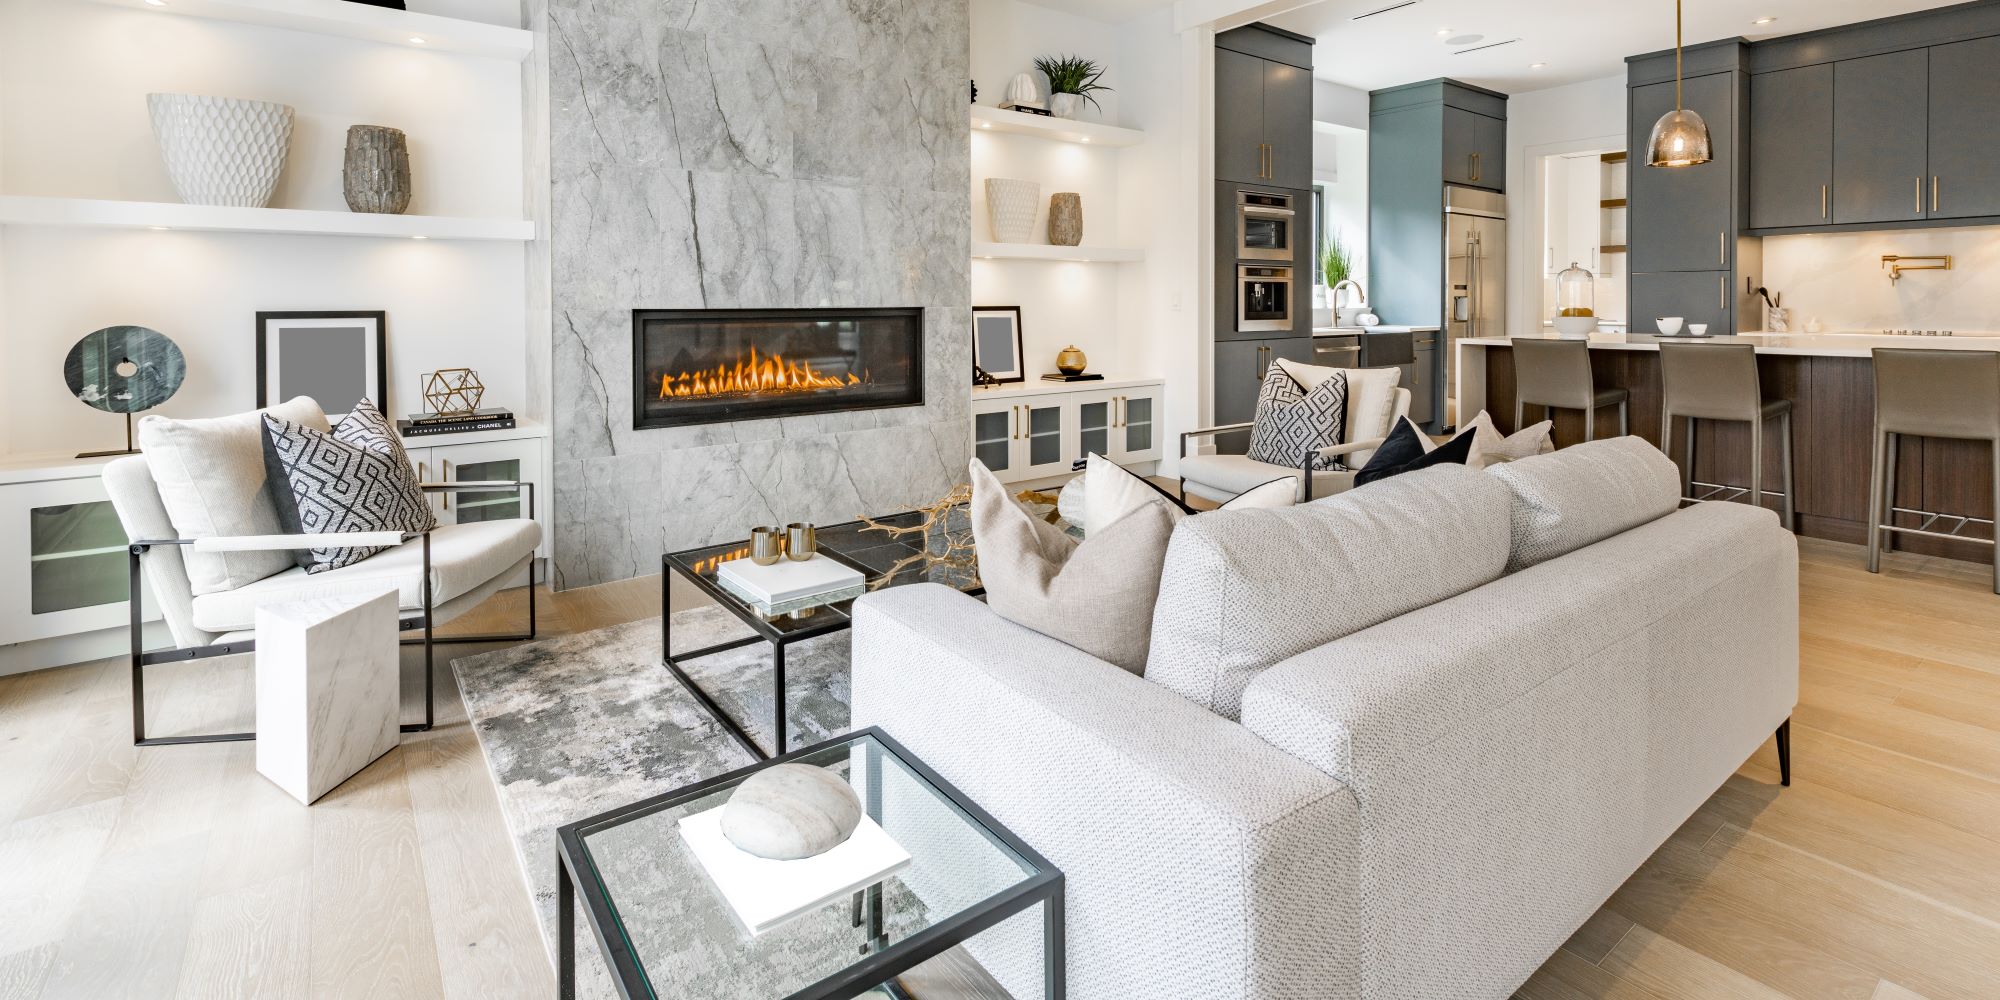 Living room de una casa de lujo. Materiales de lujo, con acabados premium, chimenea tecnológica.